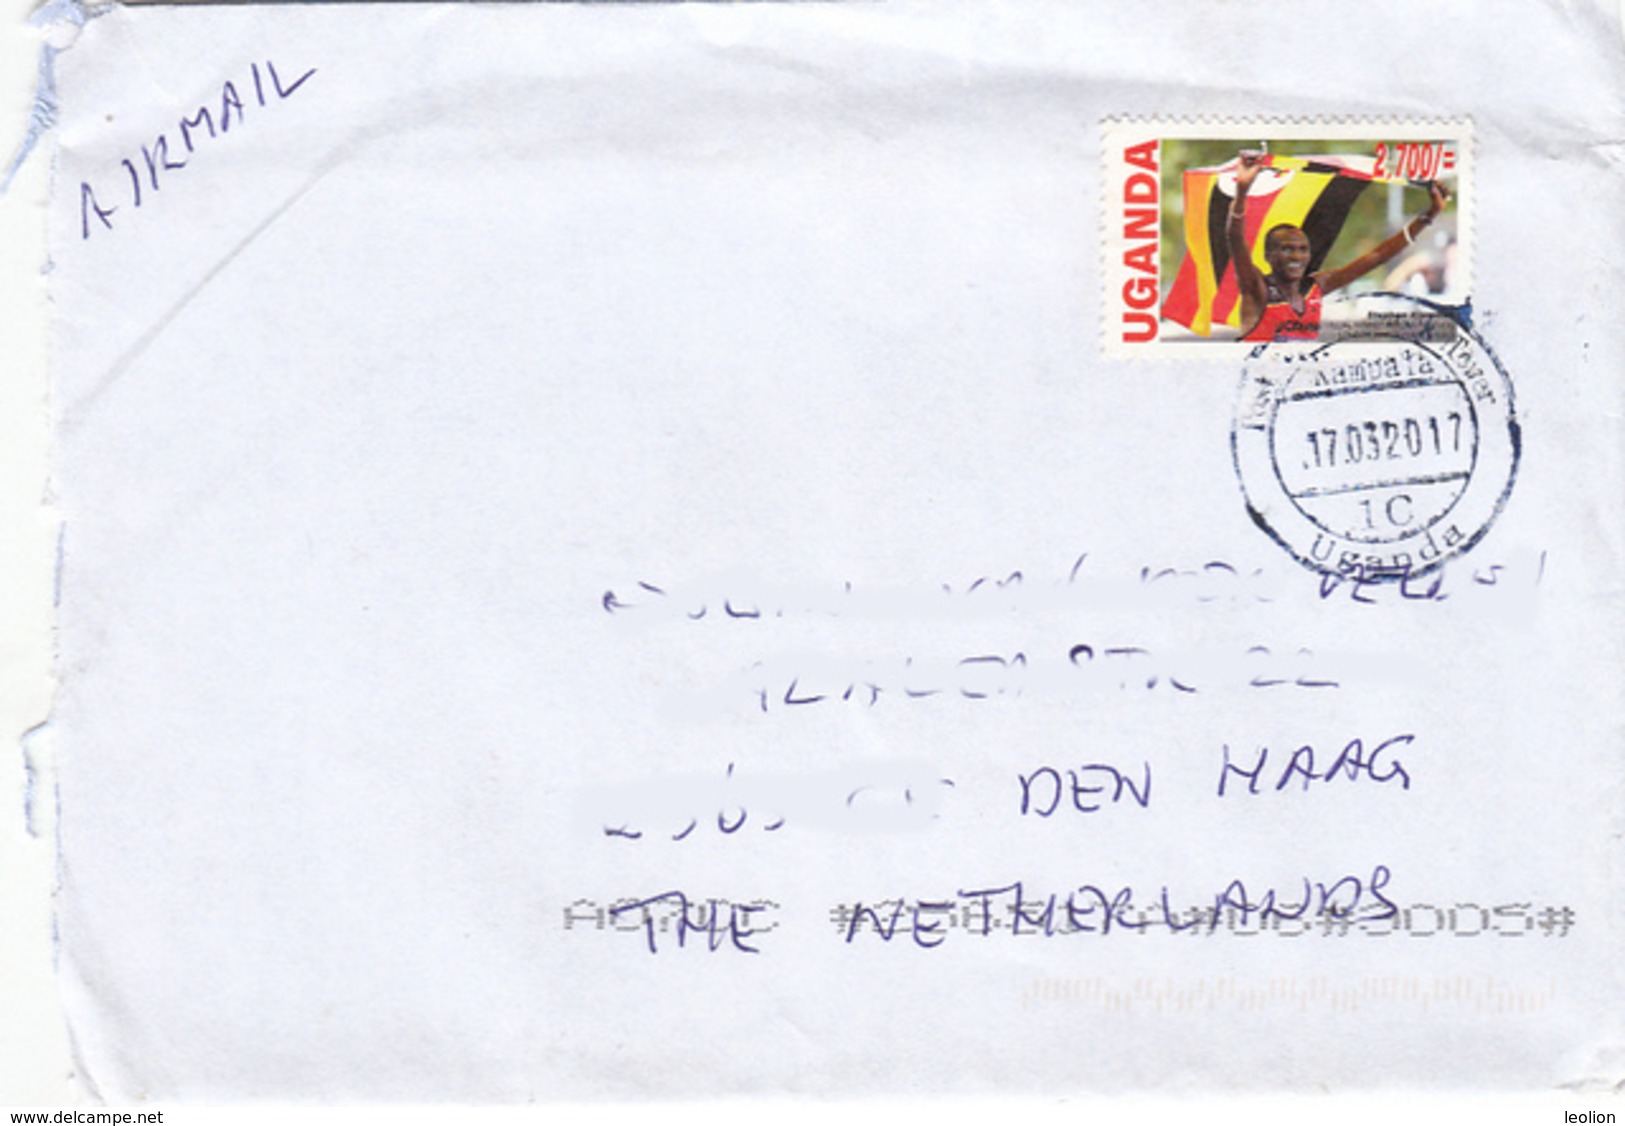 UGANDA - Postally Used Cover To The Netherlands With 2013 Kiprotich Olympic Gold UGX 2700 OUGANDA C024 - Uganda (1962-...)